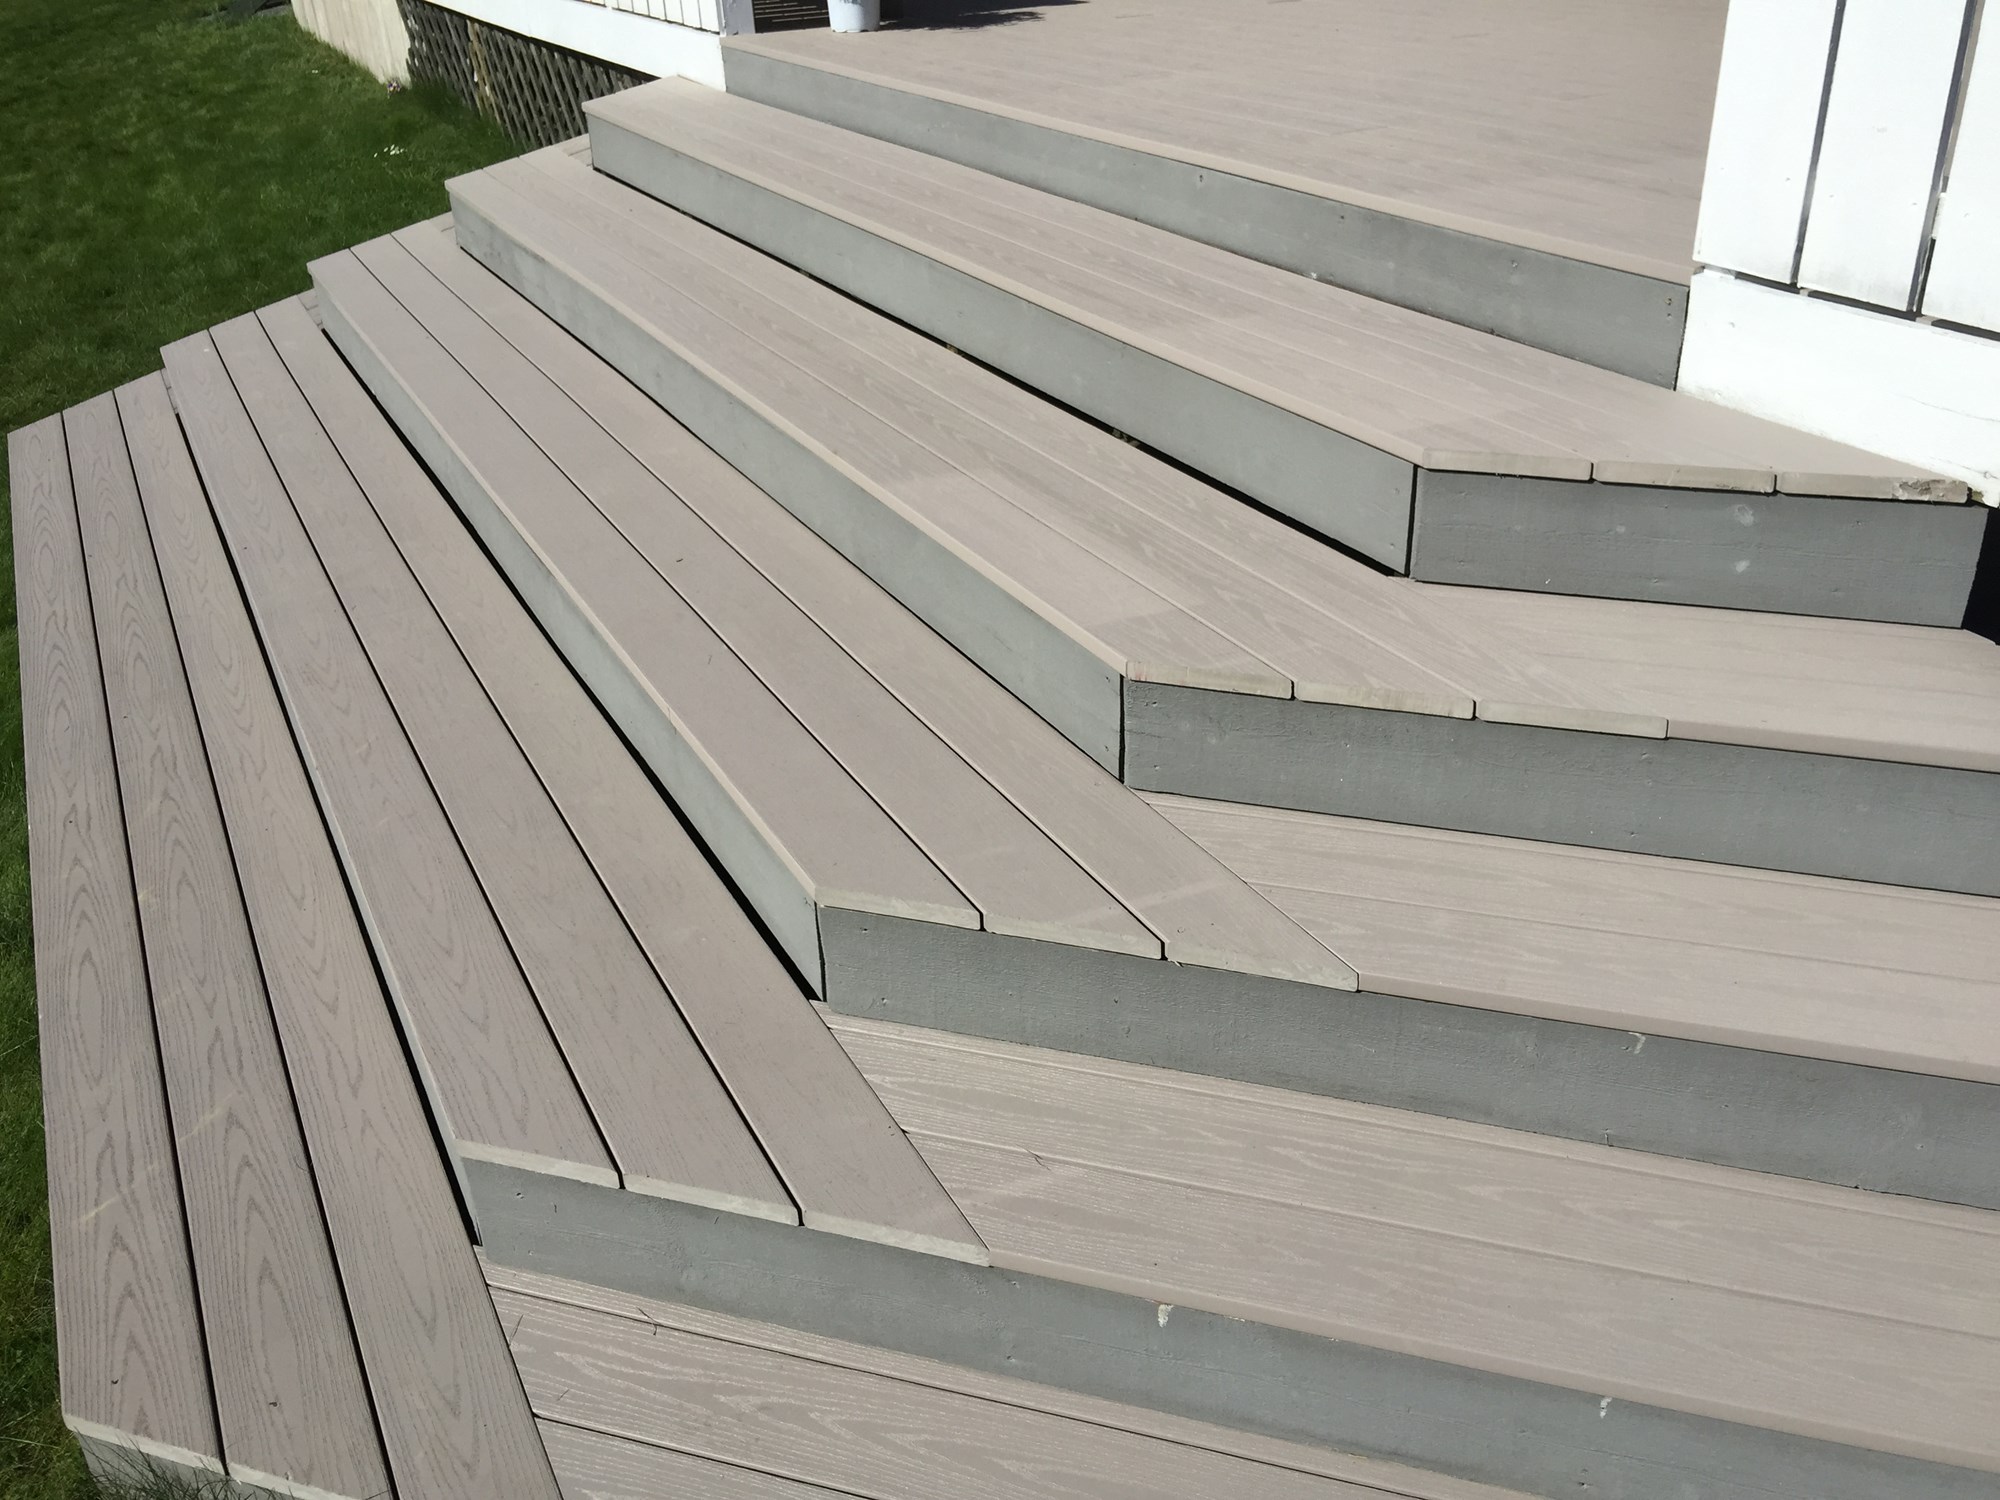 AZEK.no - Flotte terrasse prosjekter med AZEK terrassegulv - Prosjekt 1 - Stairs.JPG - Espadre